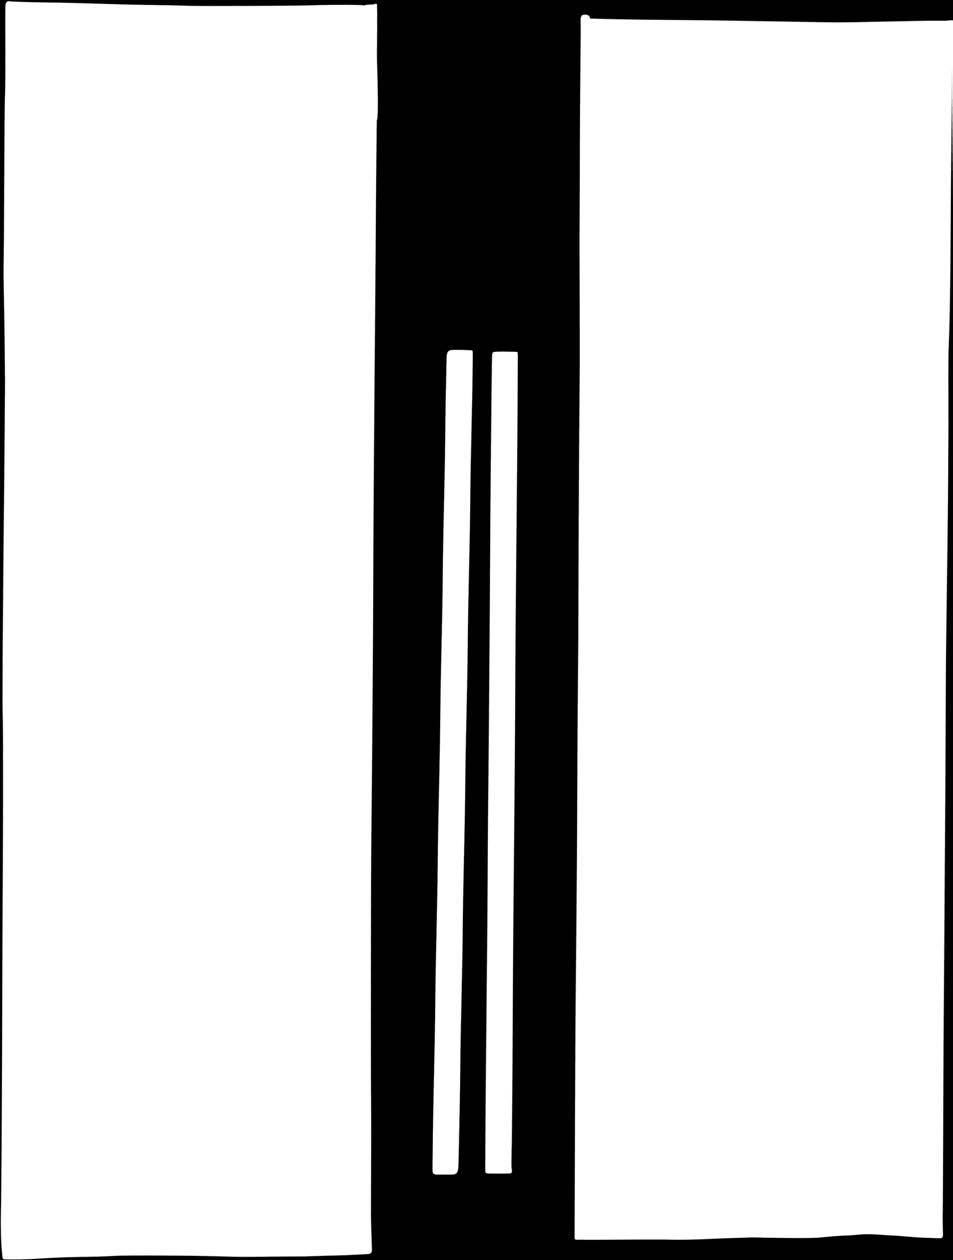 Durchmesser Trinkhalmgrundfarben: 1. spiral gestreift 2. spiral gestreift 3.